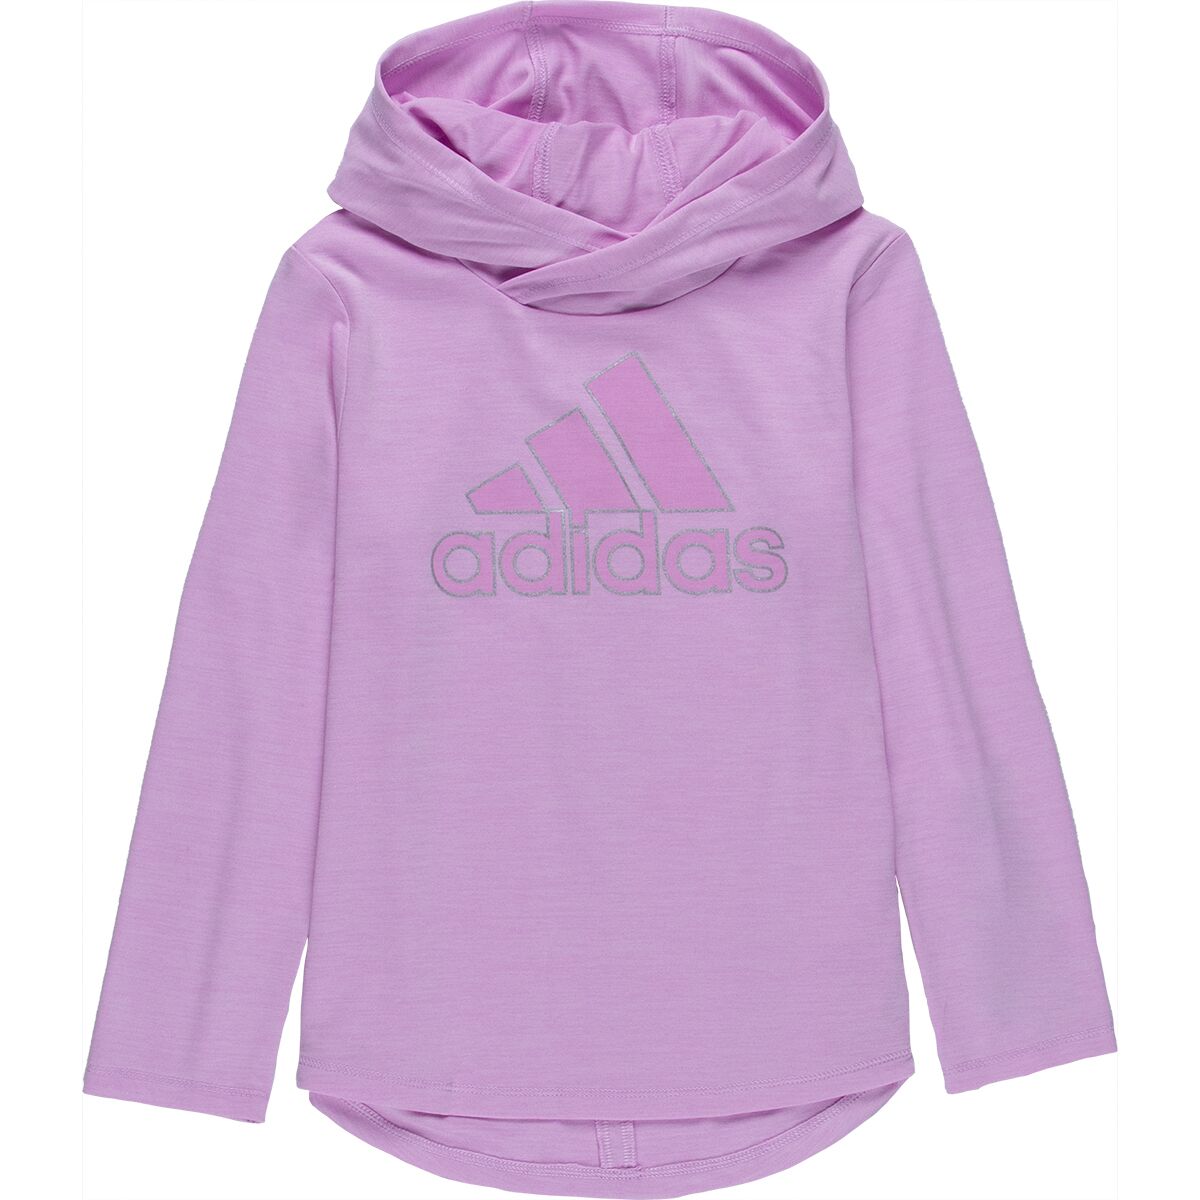 Adidas Melange Hooded Top - Toddler Girls'